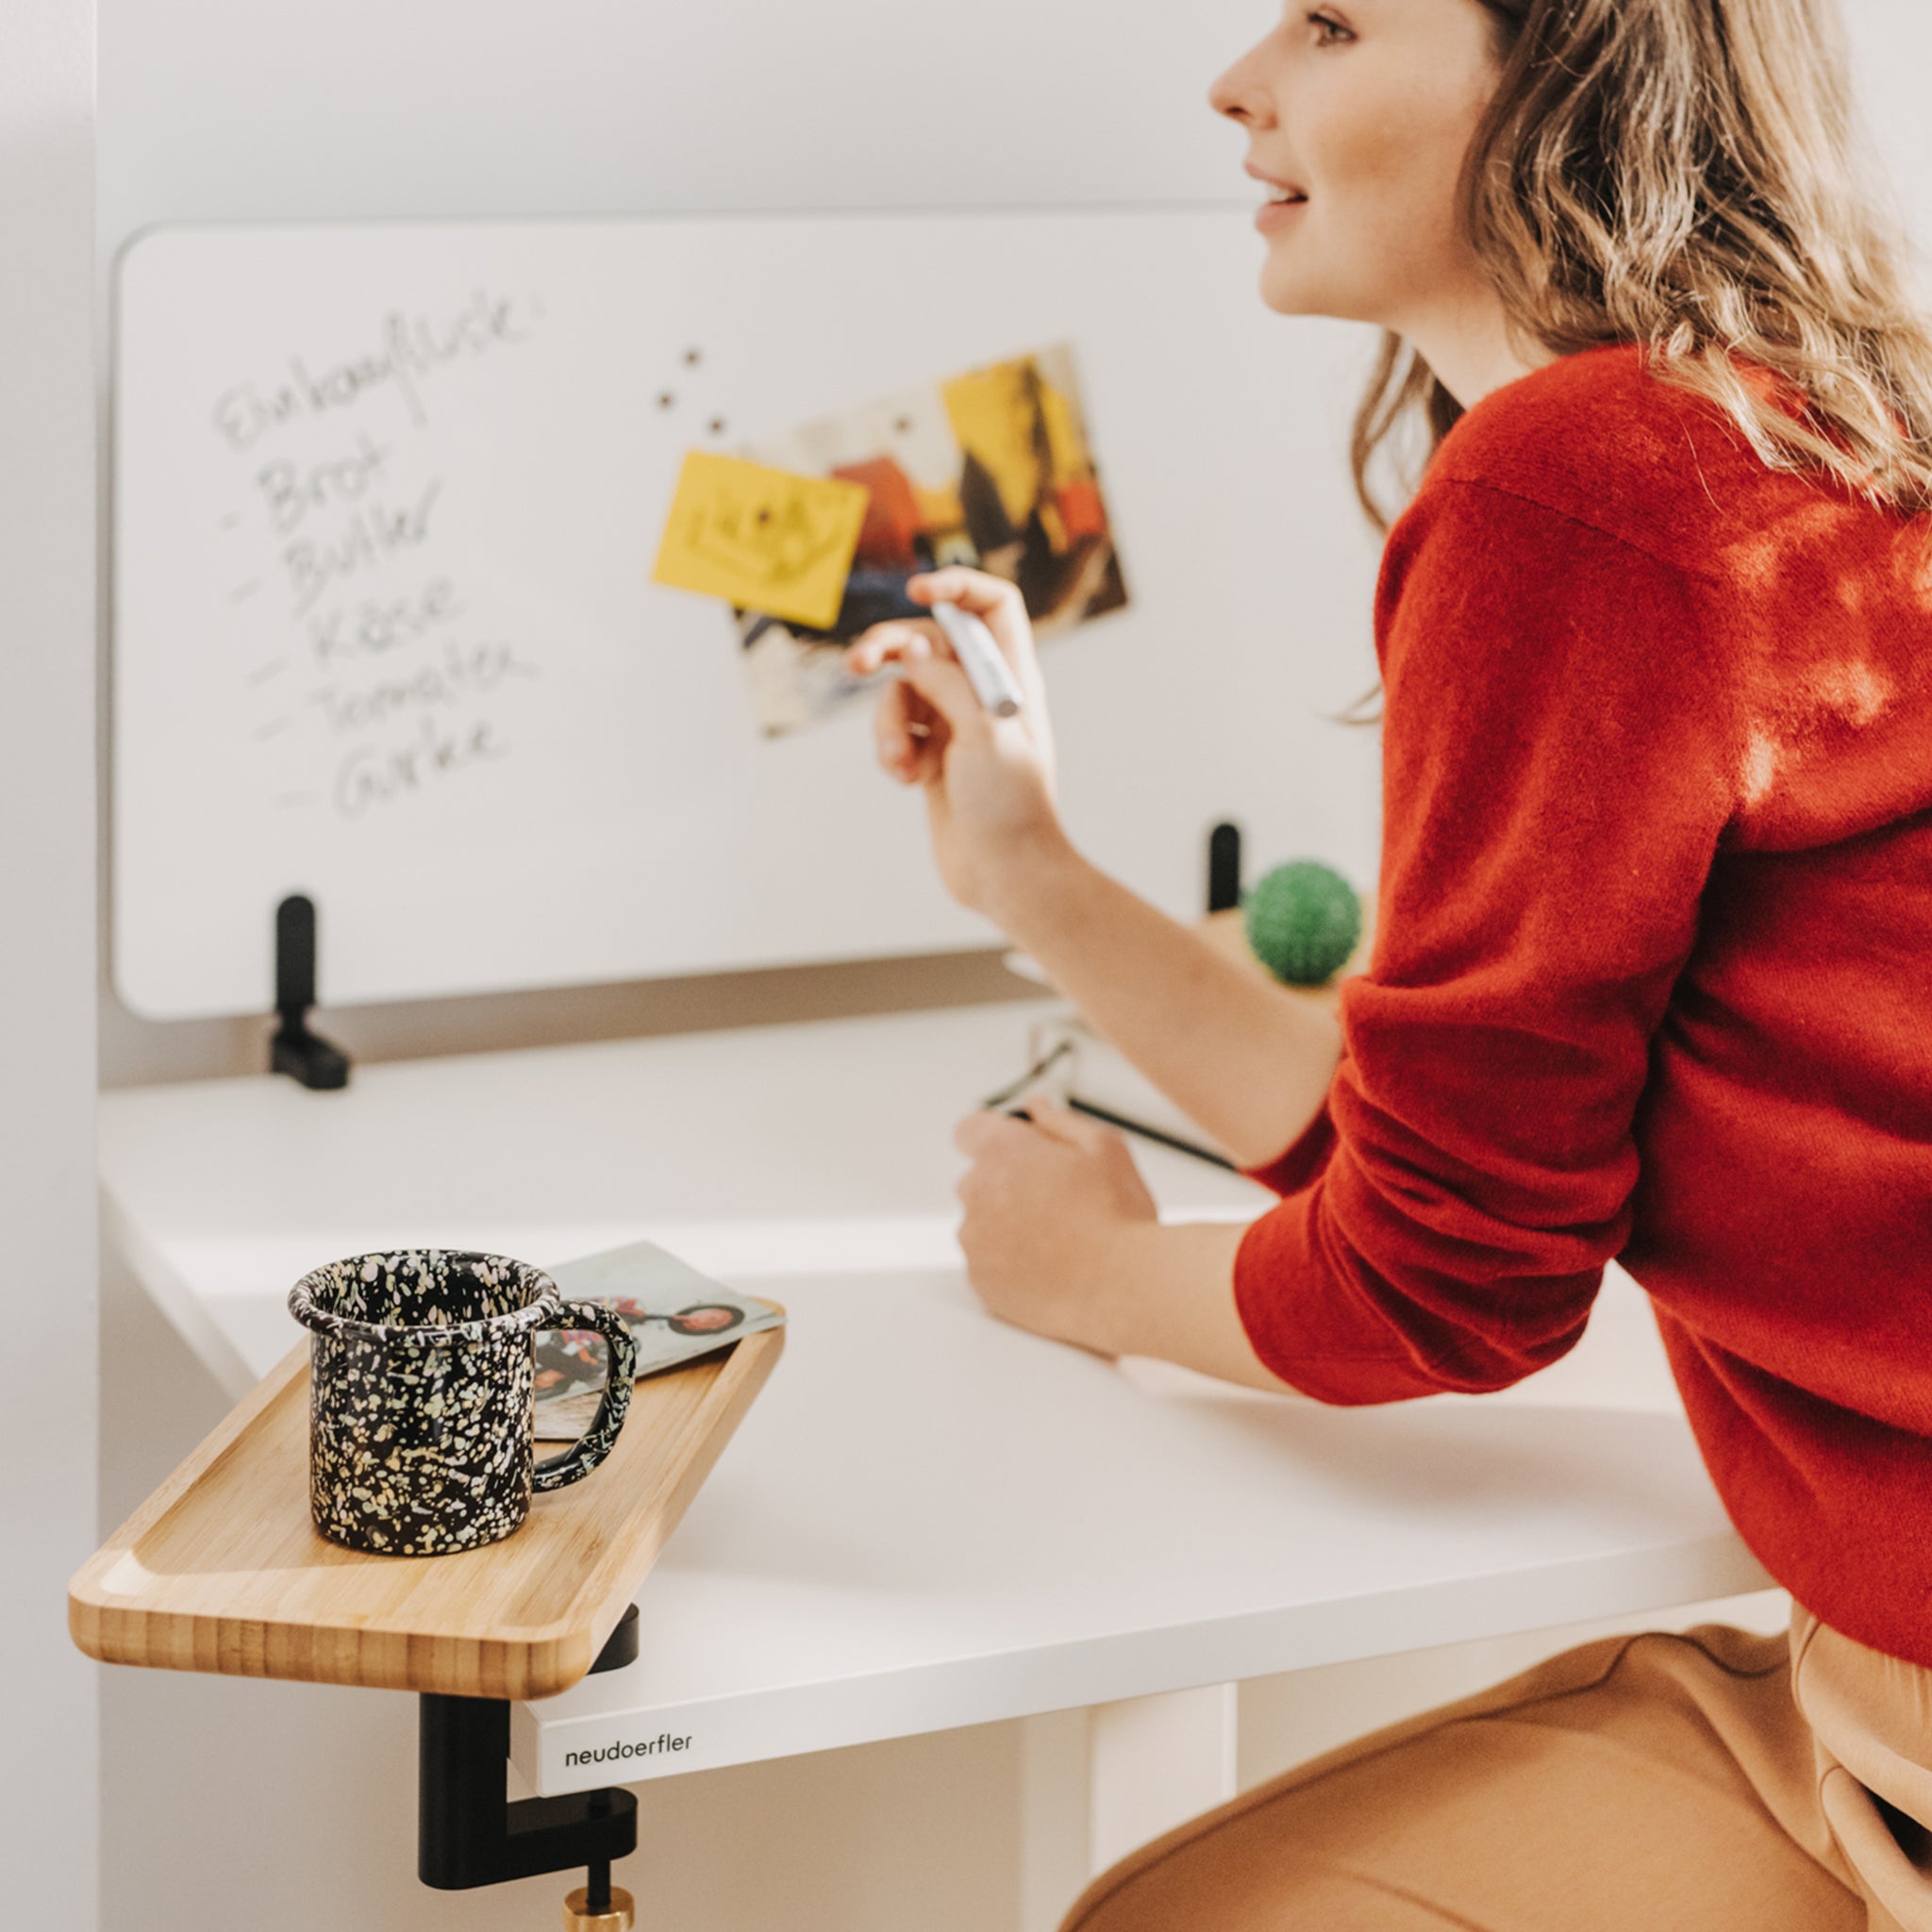 Eine junge Frau mit braunen, langen Haaren und einem roten Pullover sitzt bei einem weißen Move Mini Arbeitstisch. Auf dem Tisch ist ein Whiteboard, das beschriftet ist, montiert und ein Anbautablet aus Holz, auf dem eine Tasse steht. Sie hält einen Stift in der Hand.